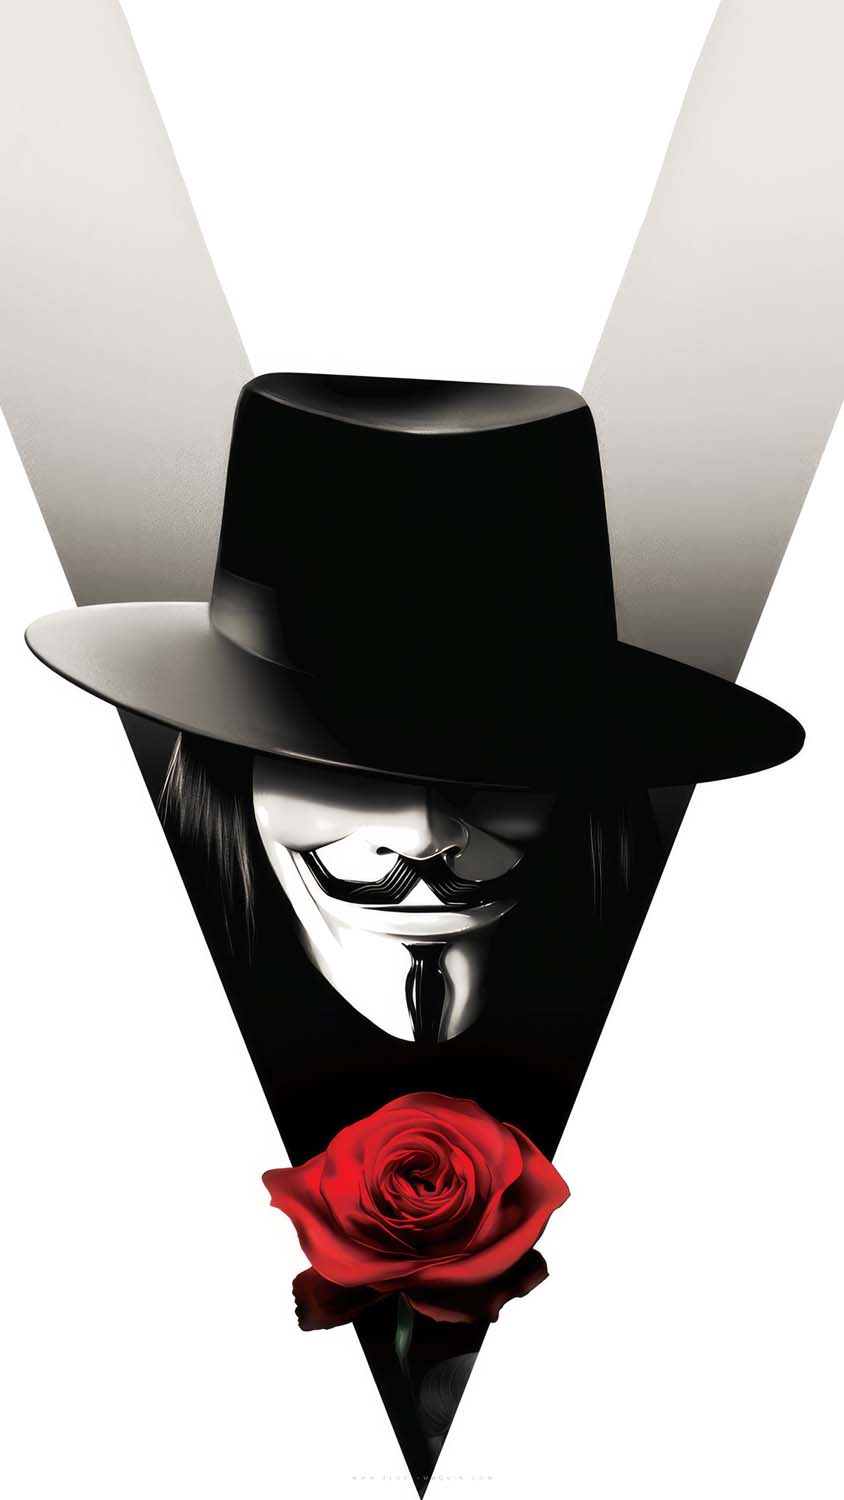 V for Vendetta illustrated iPhone Wallpaper 4K